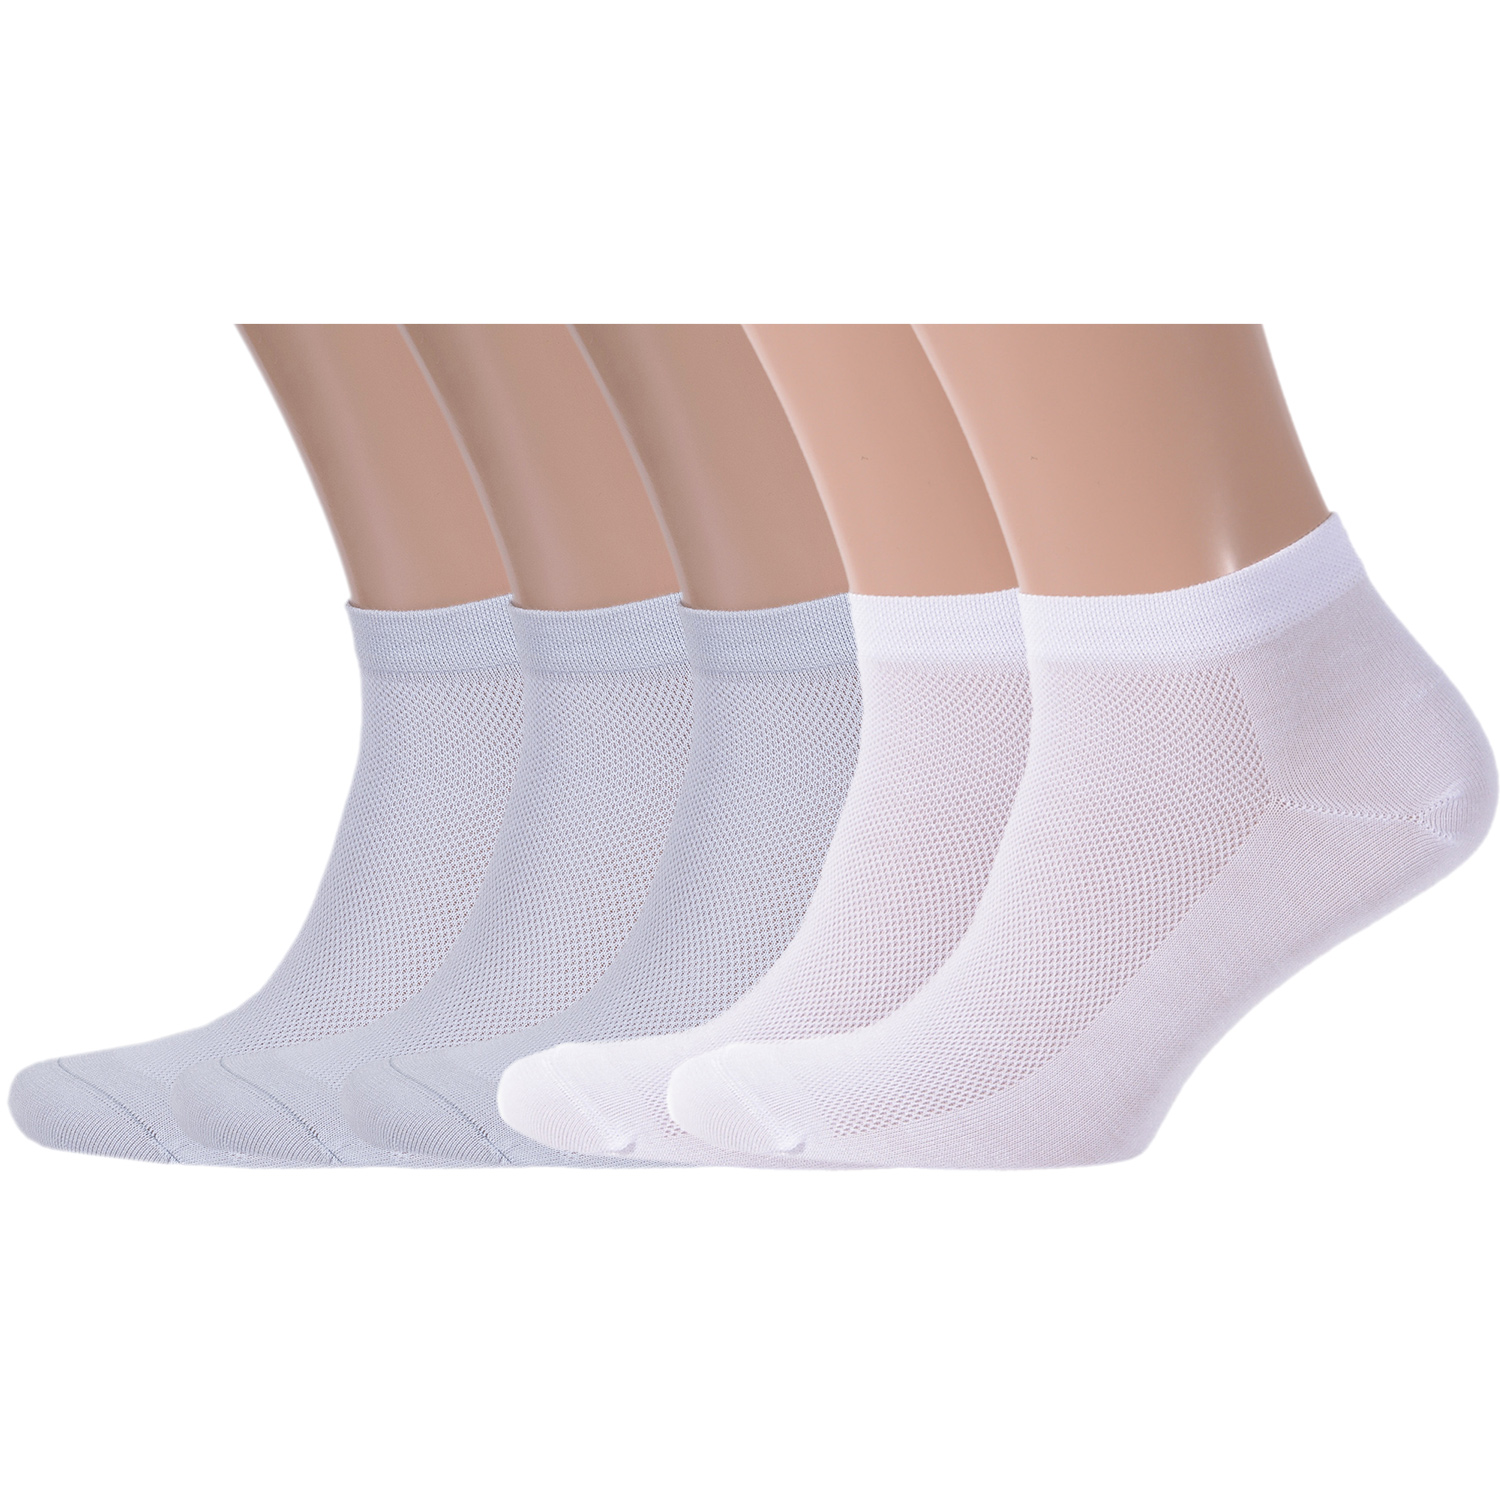 Комплект носков мужских Rusocks белых; серых